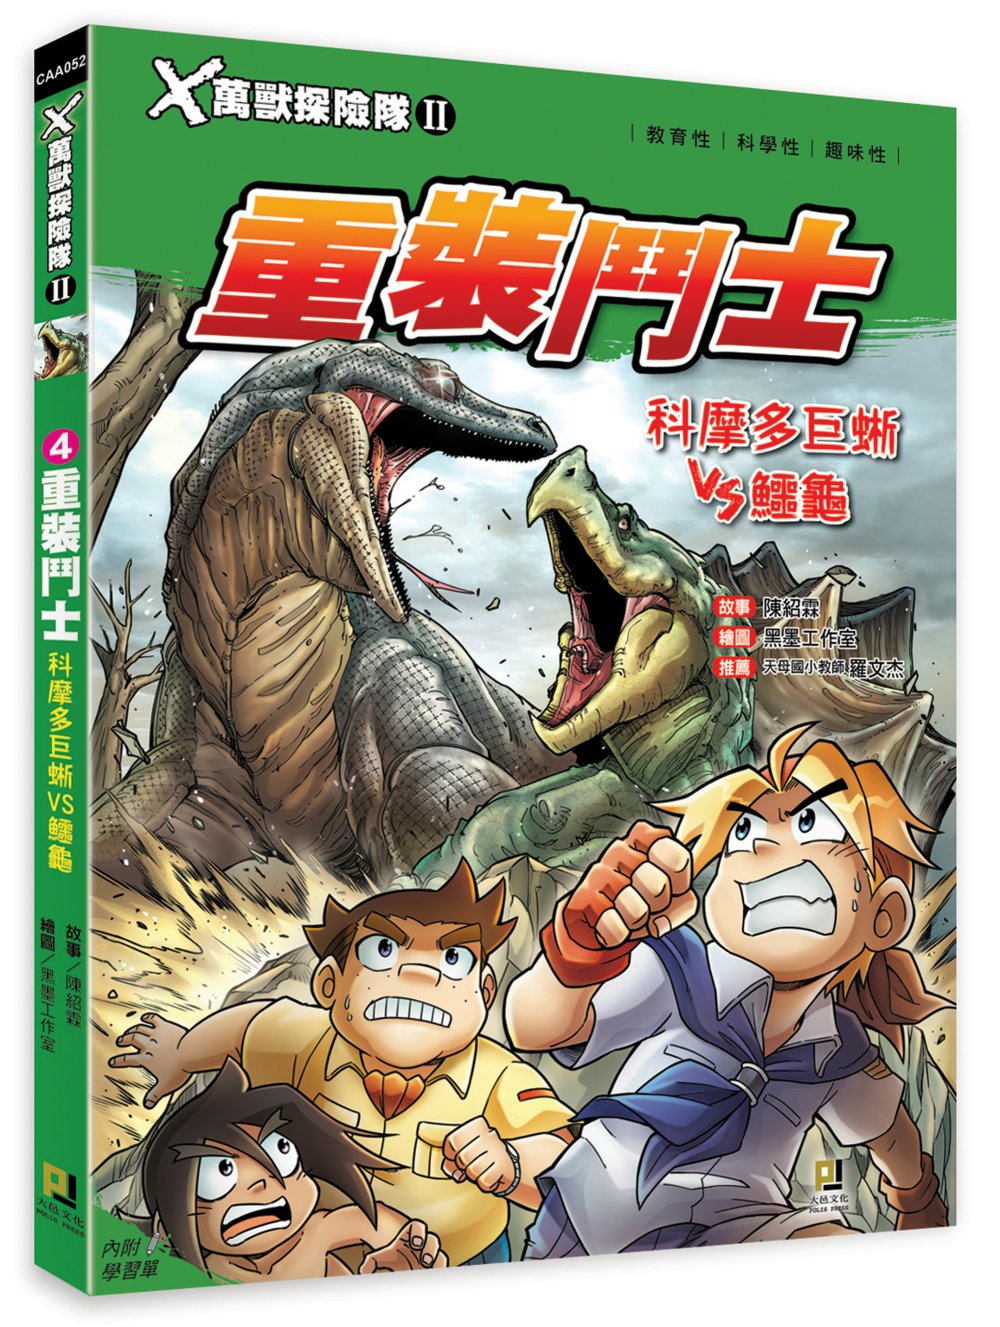 Ｘ萬獸探險隊Ⅱ：(4)重裝鬥士 科摩多巨蜥VS鱷龜（附學習單）